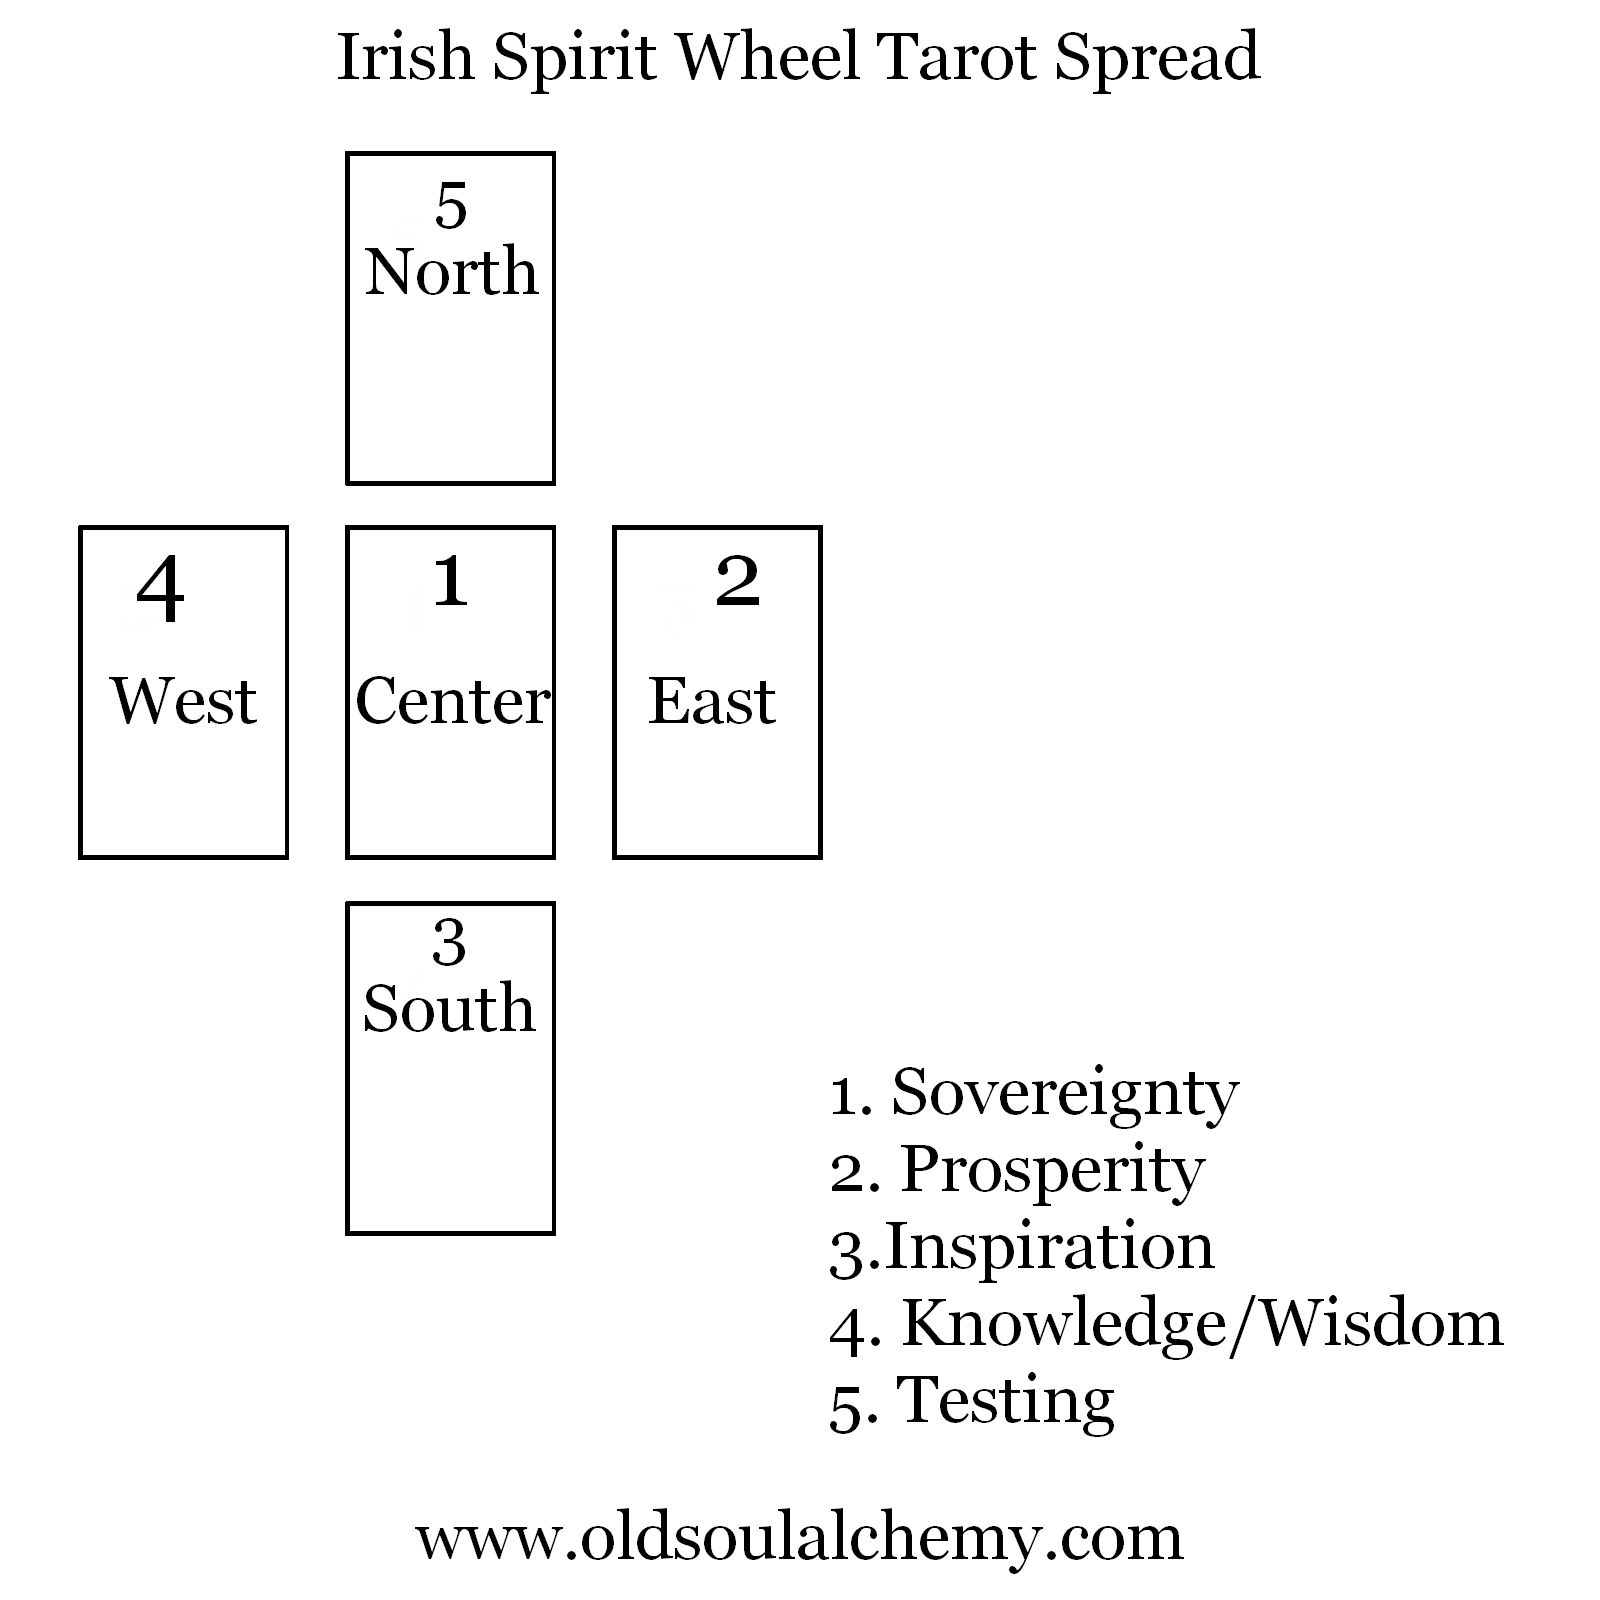 The Irish Wheel Tarot Spread